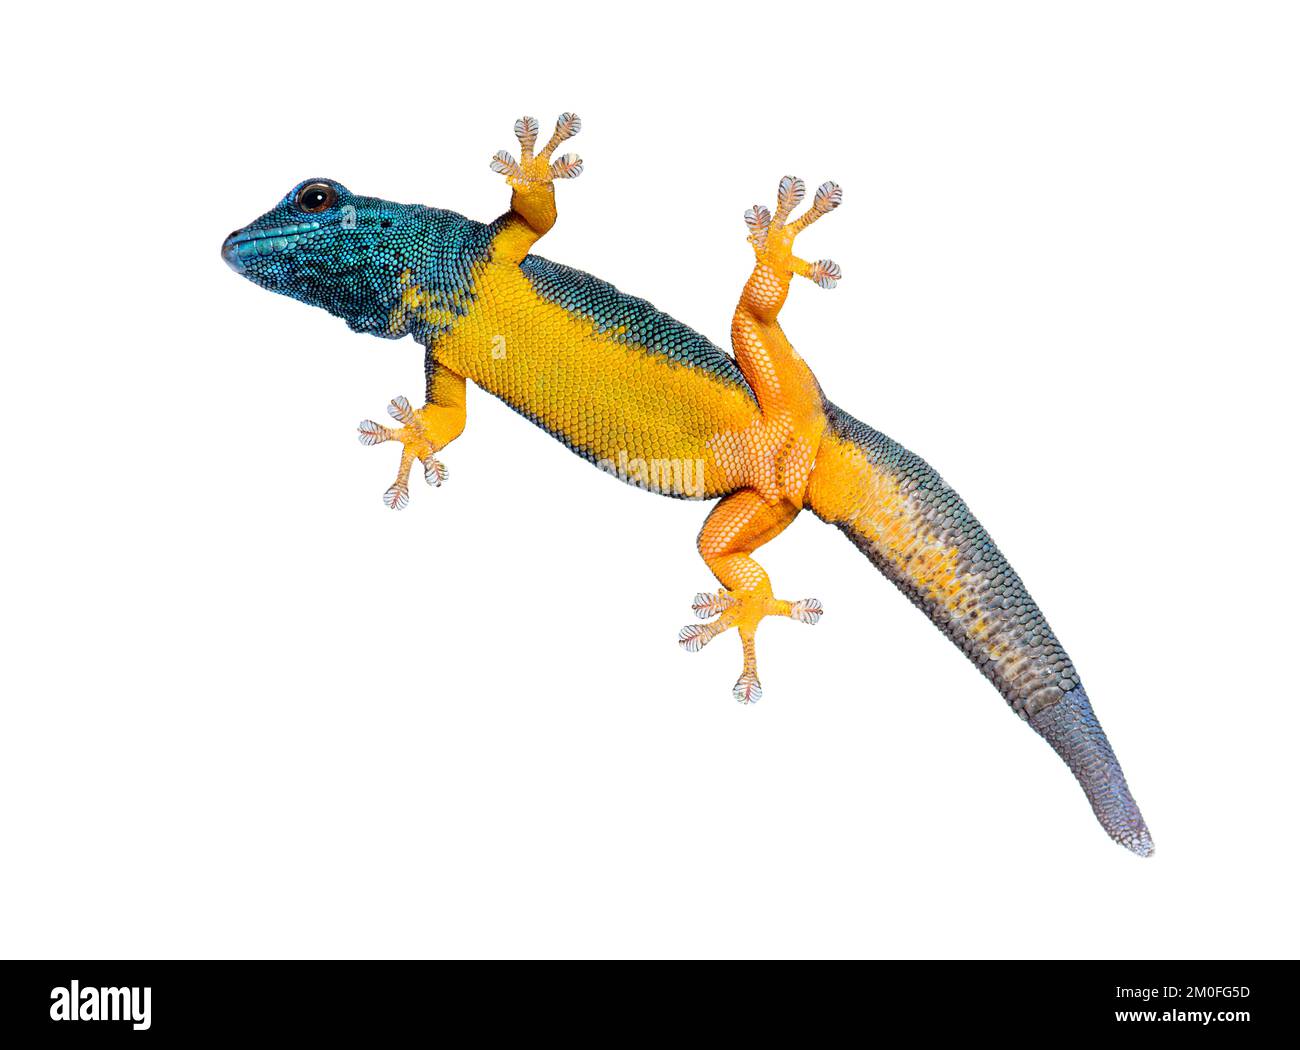 Vue de dessous d'un Gecko bleu électrique montrant ses pieds-coussins d'aspiration, Lygodactylus williamsi, isolé sur blanc Banque D'Images